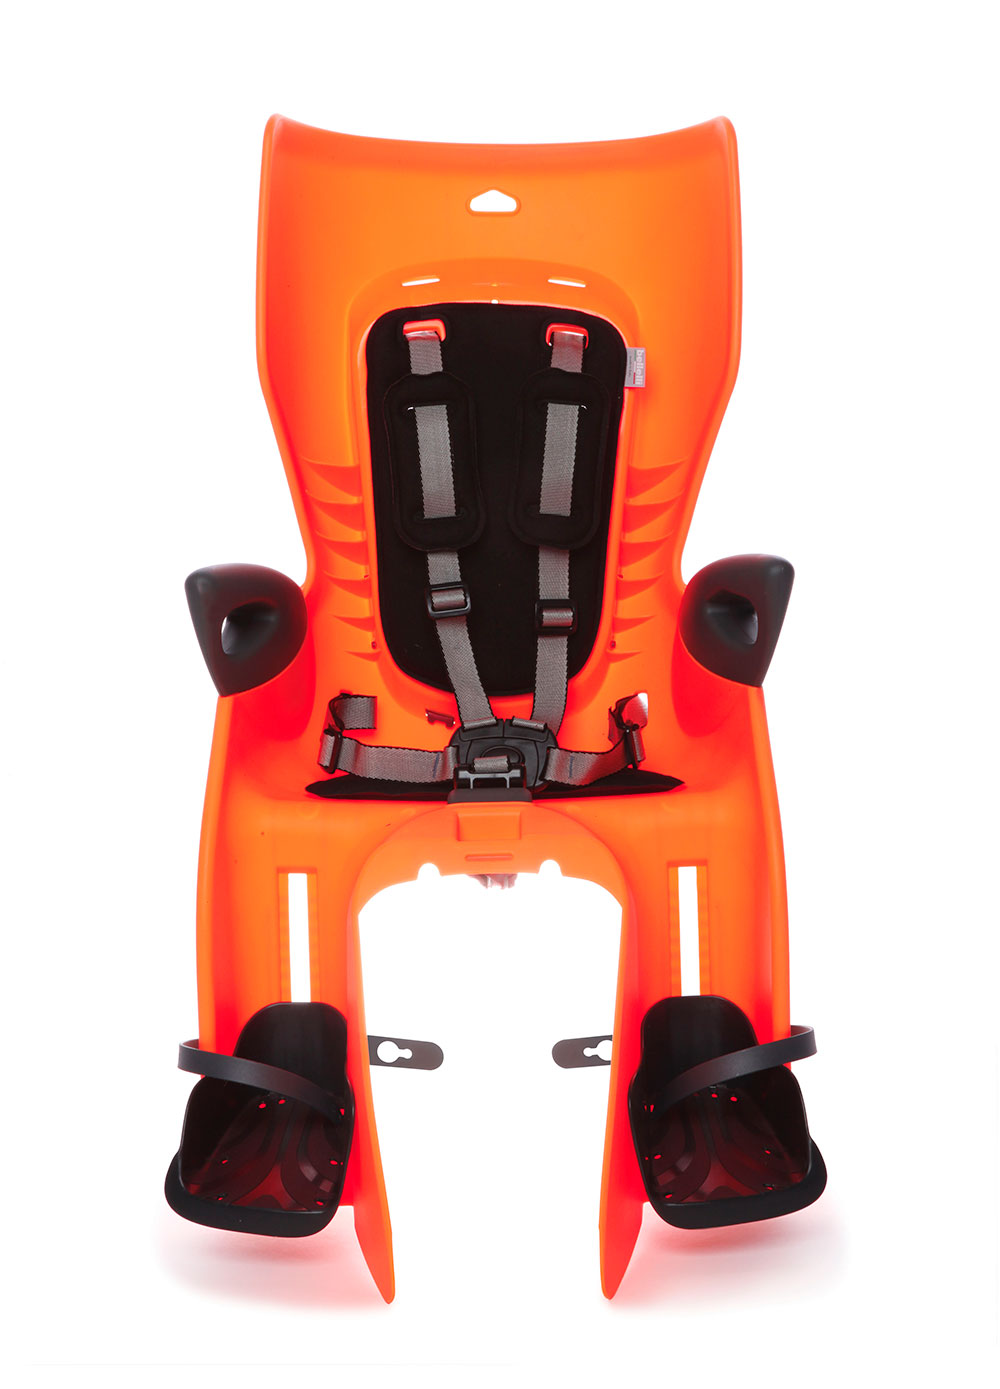 Сиденье задн. Bellelli Summer Сlamp (на багажник) до 22кг, оранжевое с черной подкладкой фото 